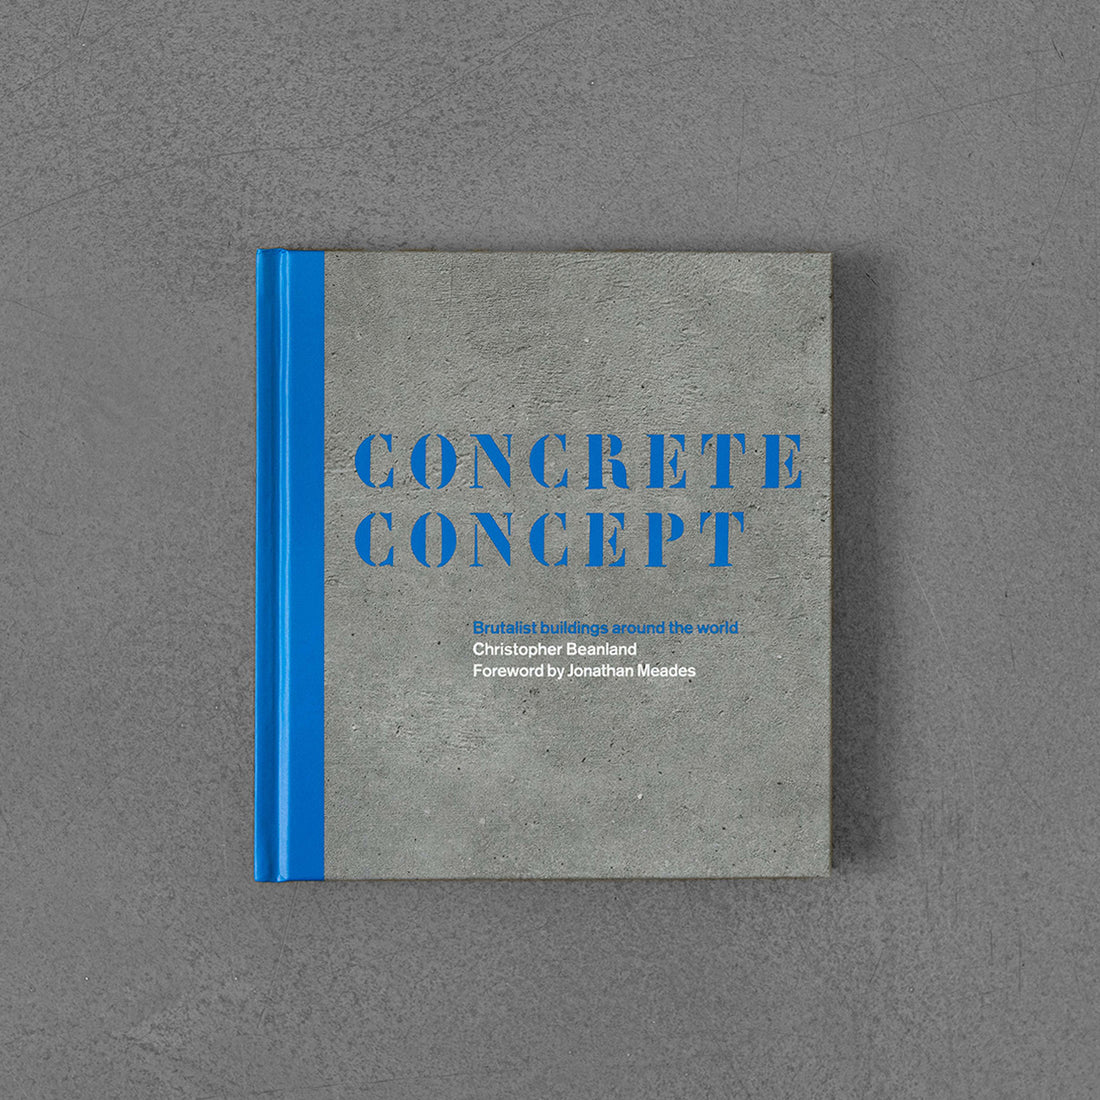 Koncept betonowy: Brutalistyczne budynki na całym świecie